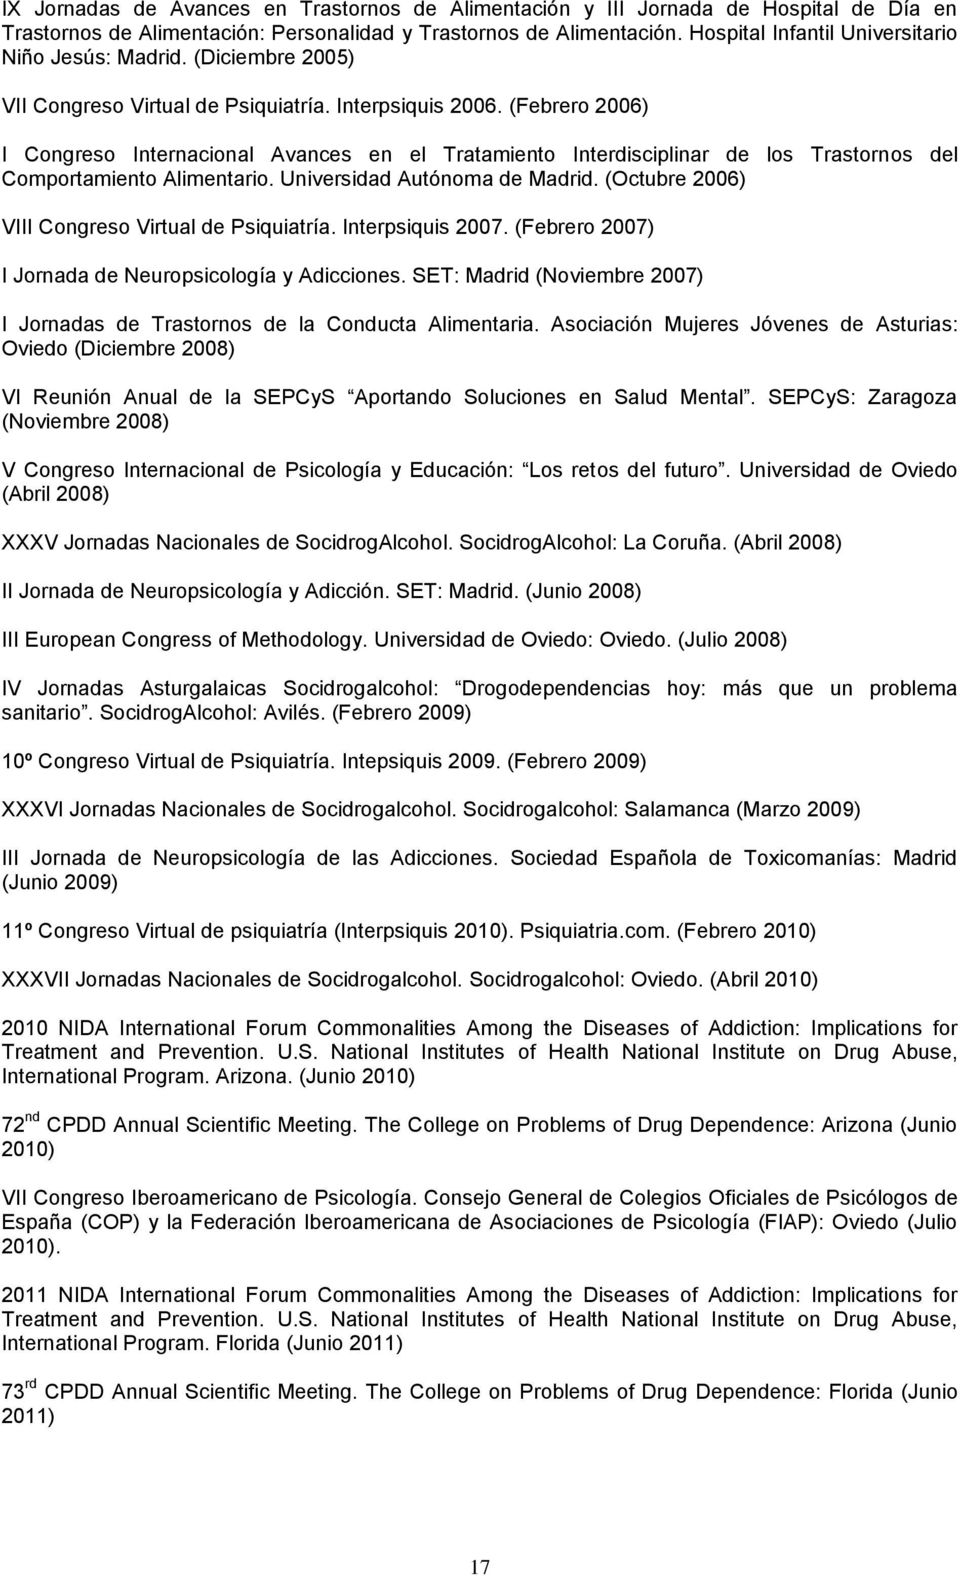 (Febrero 2006) I Congreso Internacional Avances en el Tratamiento Interdisciplinar de los Trastornos del Comportamiento Alimentario. Universidad Autónoma de Madrid.